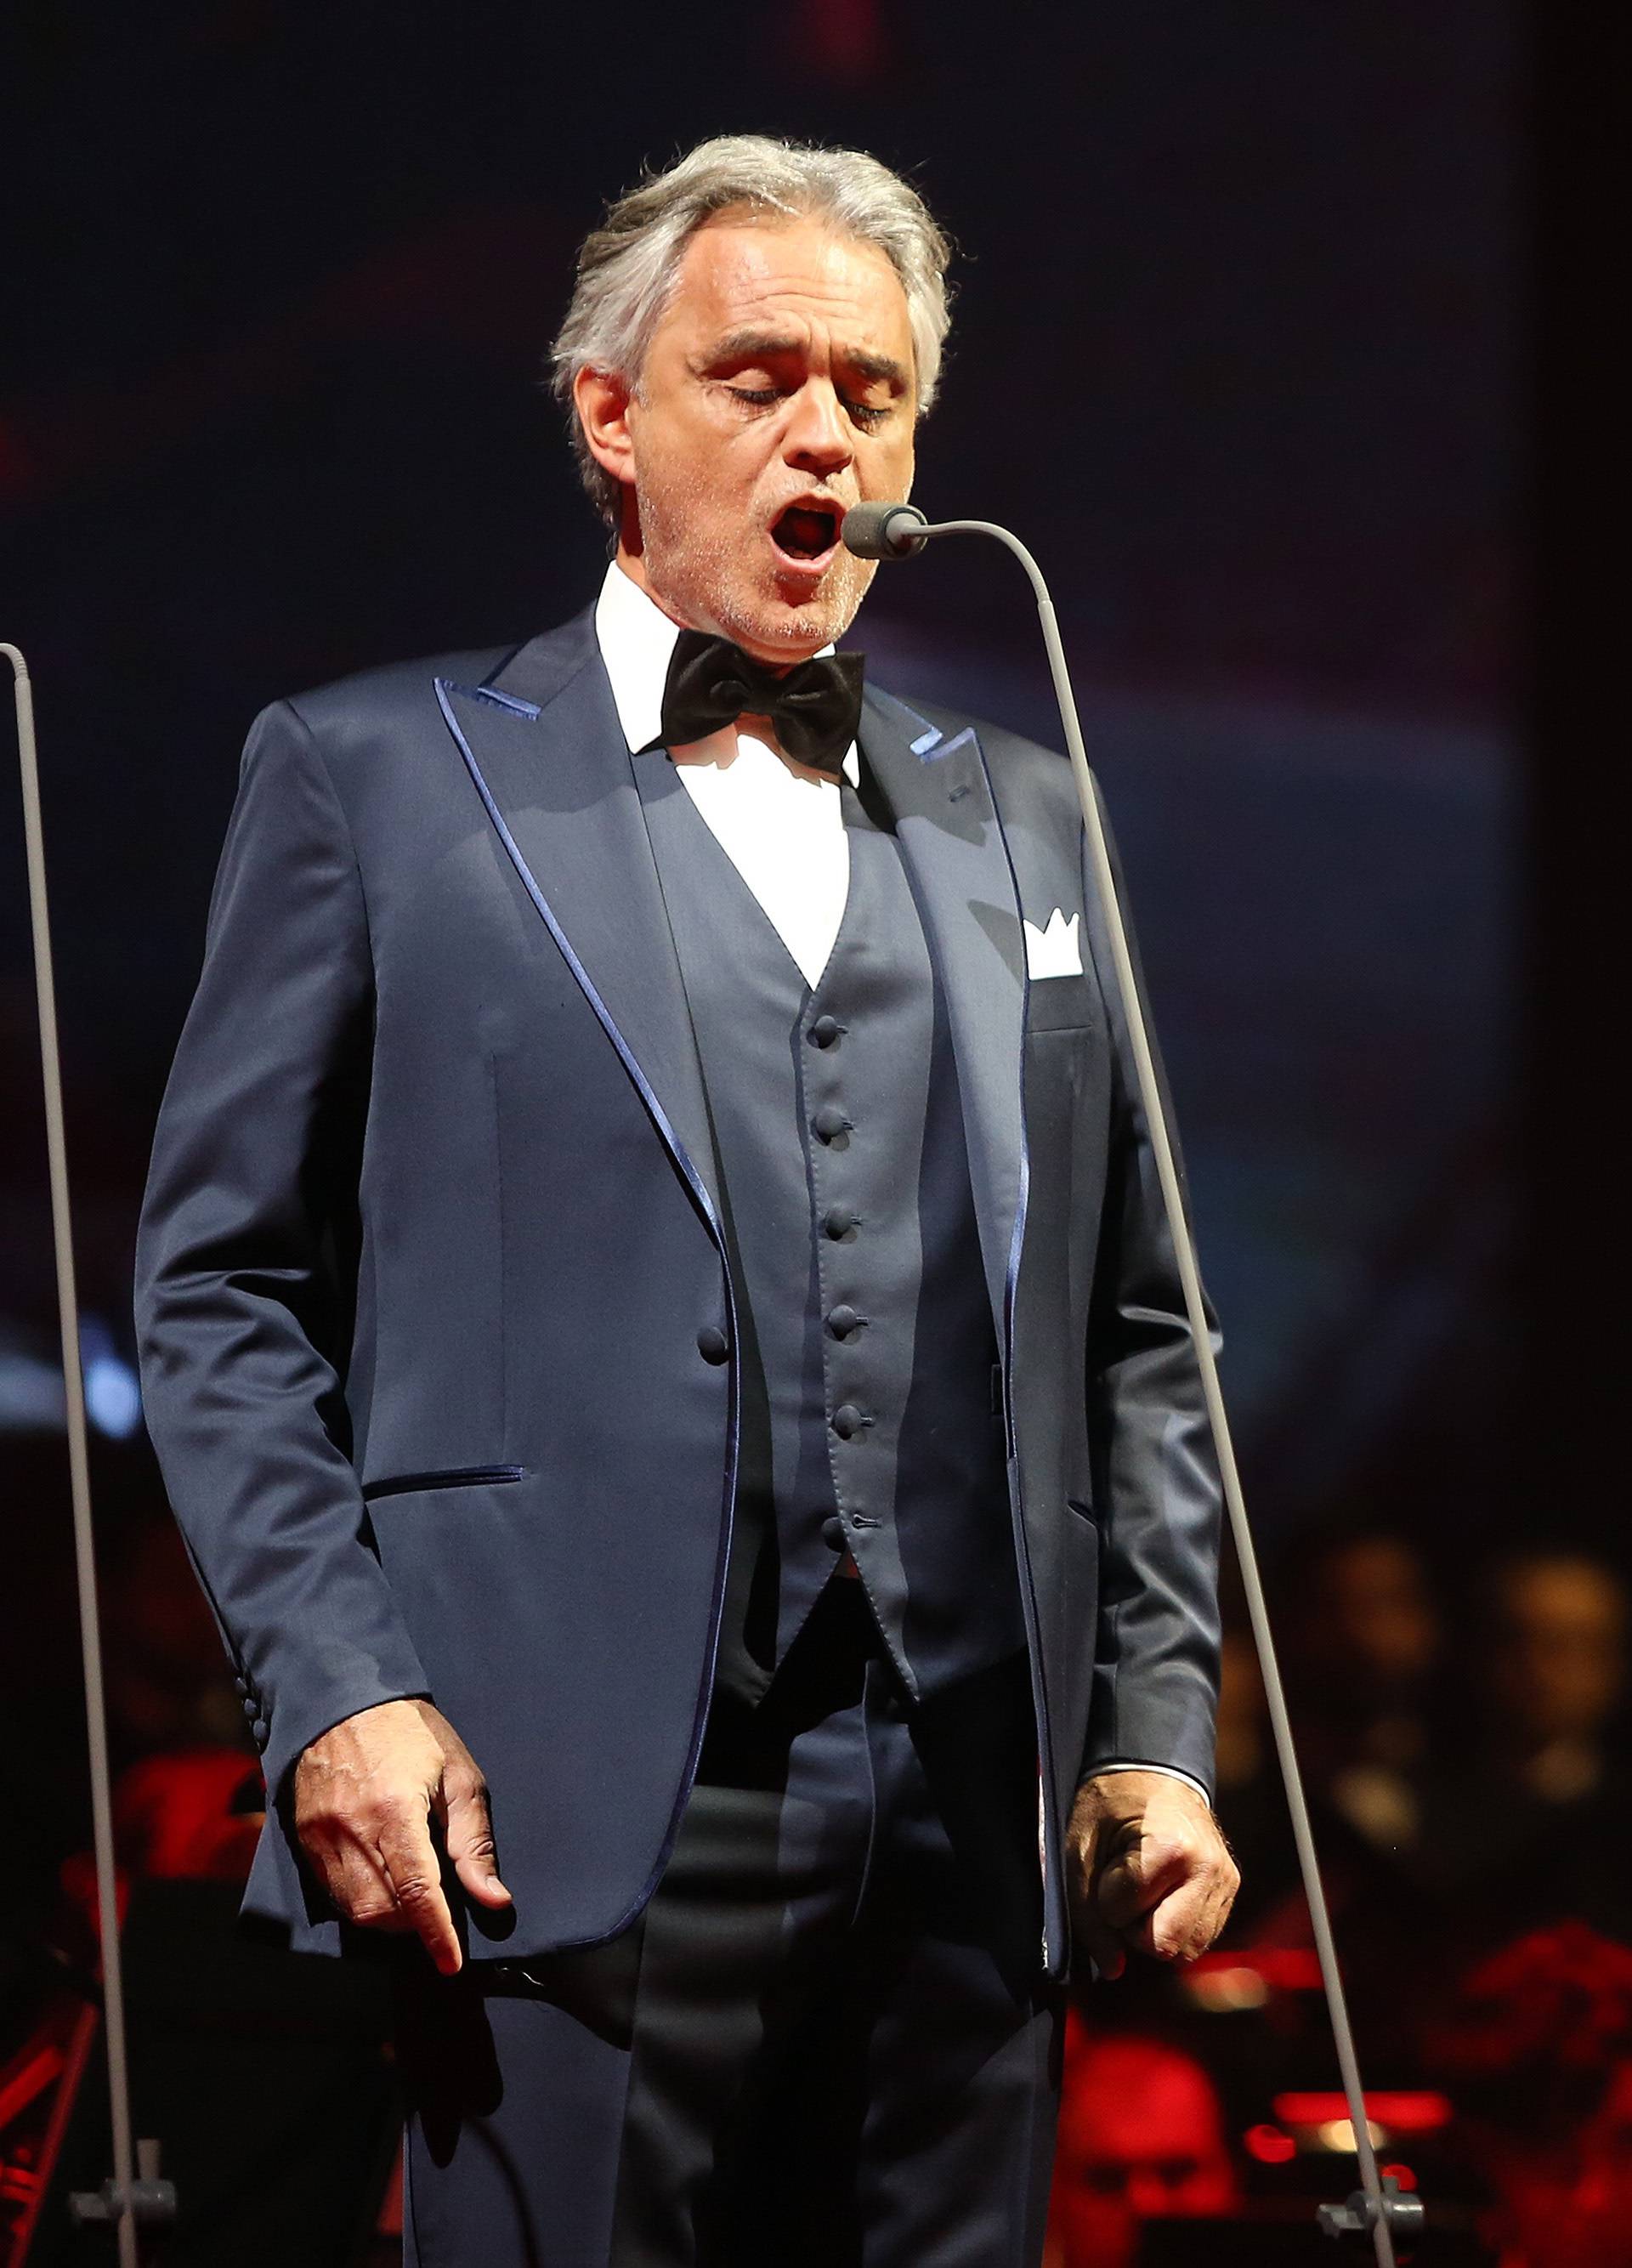 Andrea Bocelli  u pulskoj Areni održat će i  drugi koncert